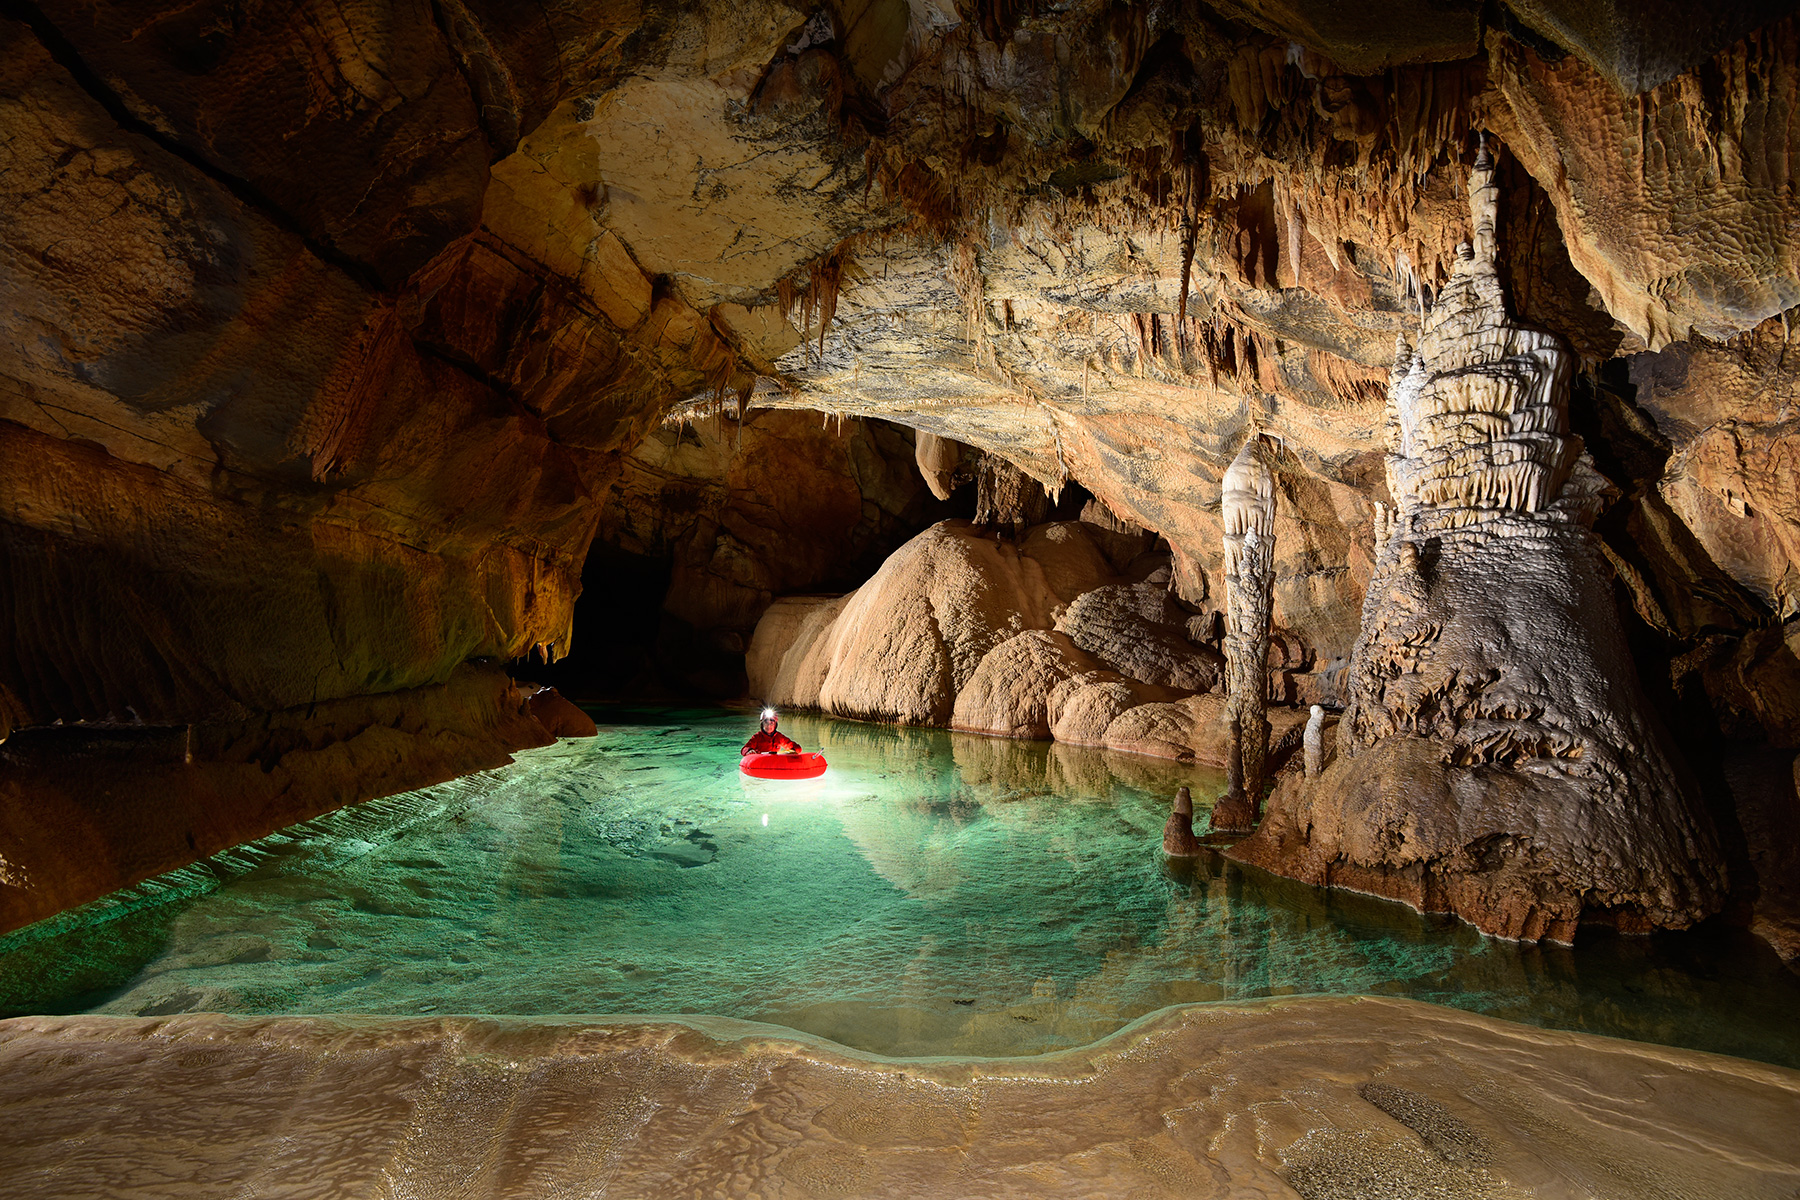 Krizna Jama (Slovénie) - Spéléo progressant en canot dans une rivière souterraine concrétionnée aux eaux vertes avec dépôts de calcite en premier plan